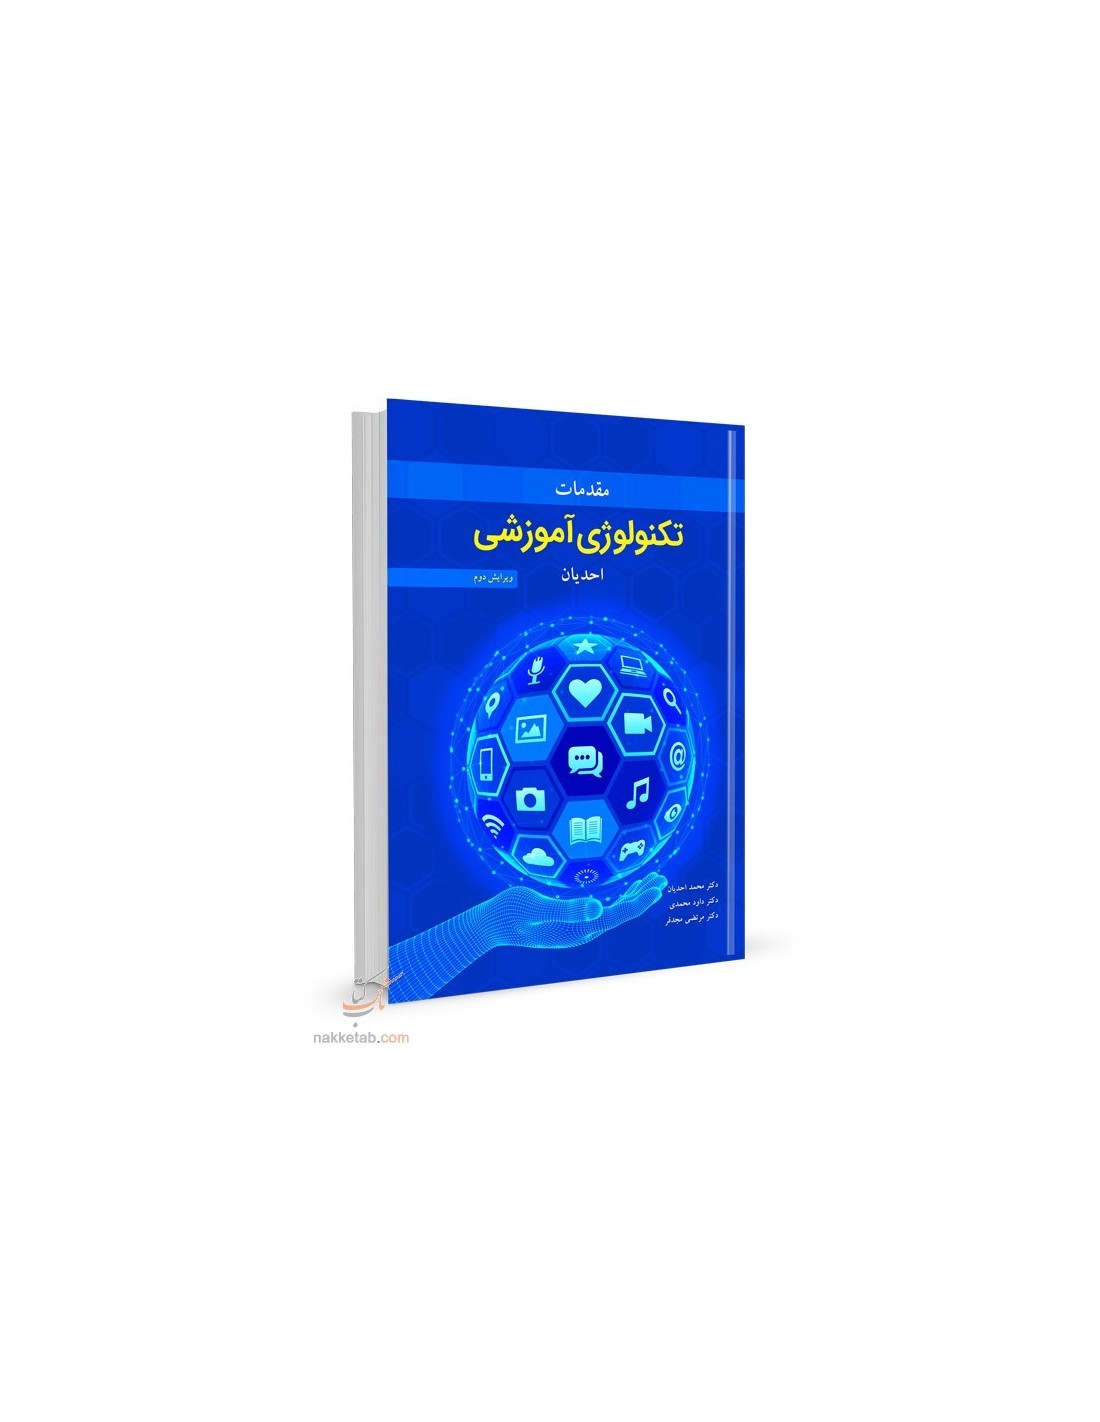 مقدمات تکنولوژی آموزشی نویسنده محمد احدیان و داود محمدی و عمران رمضانی